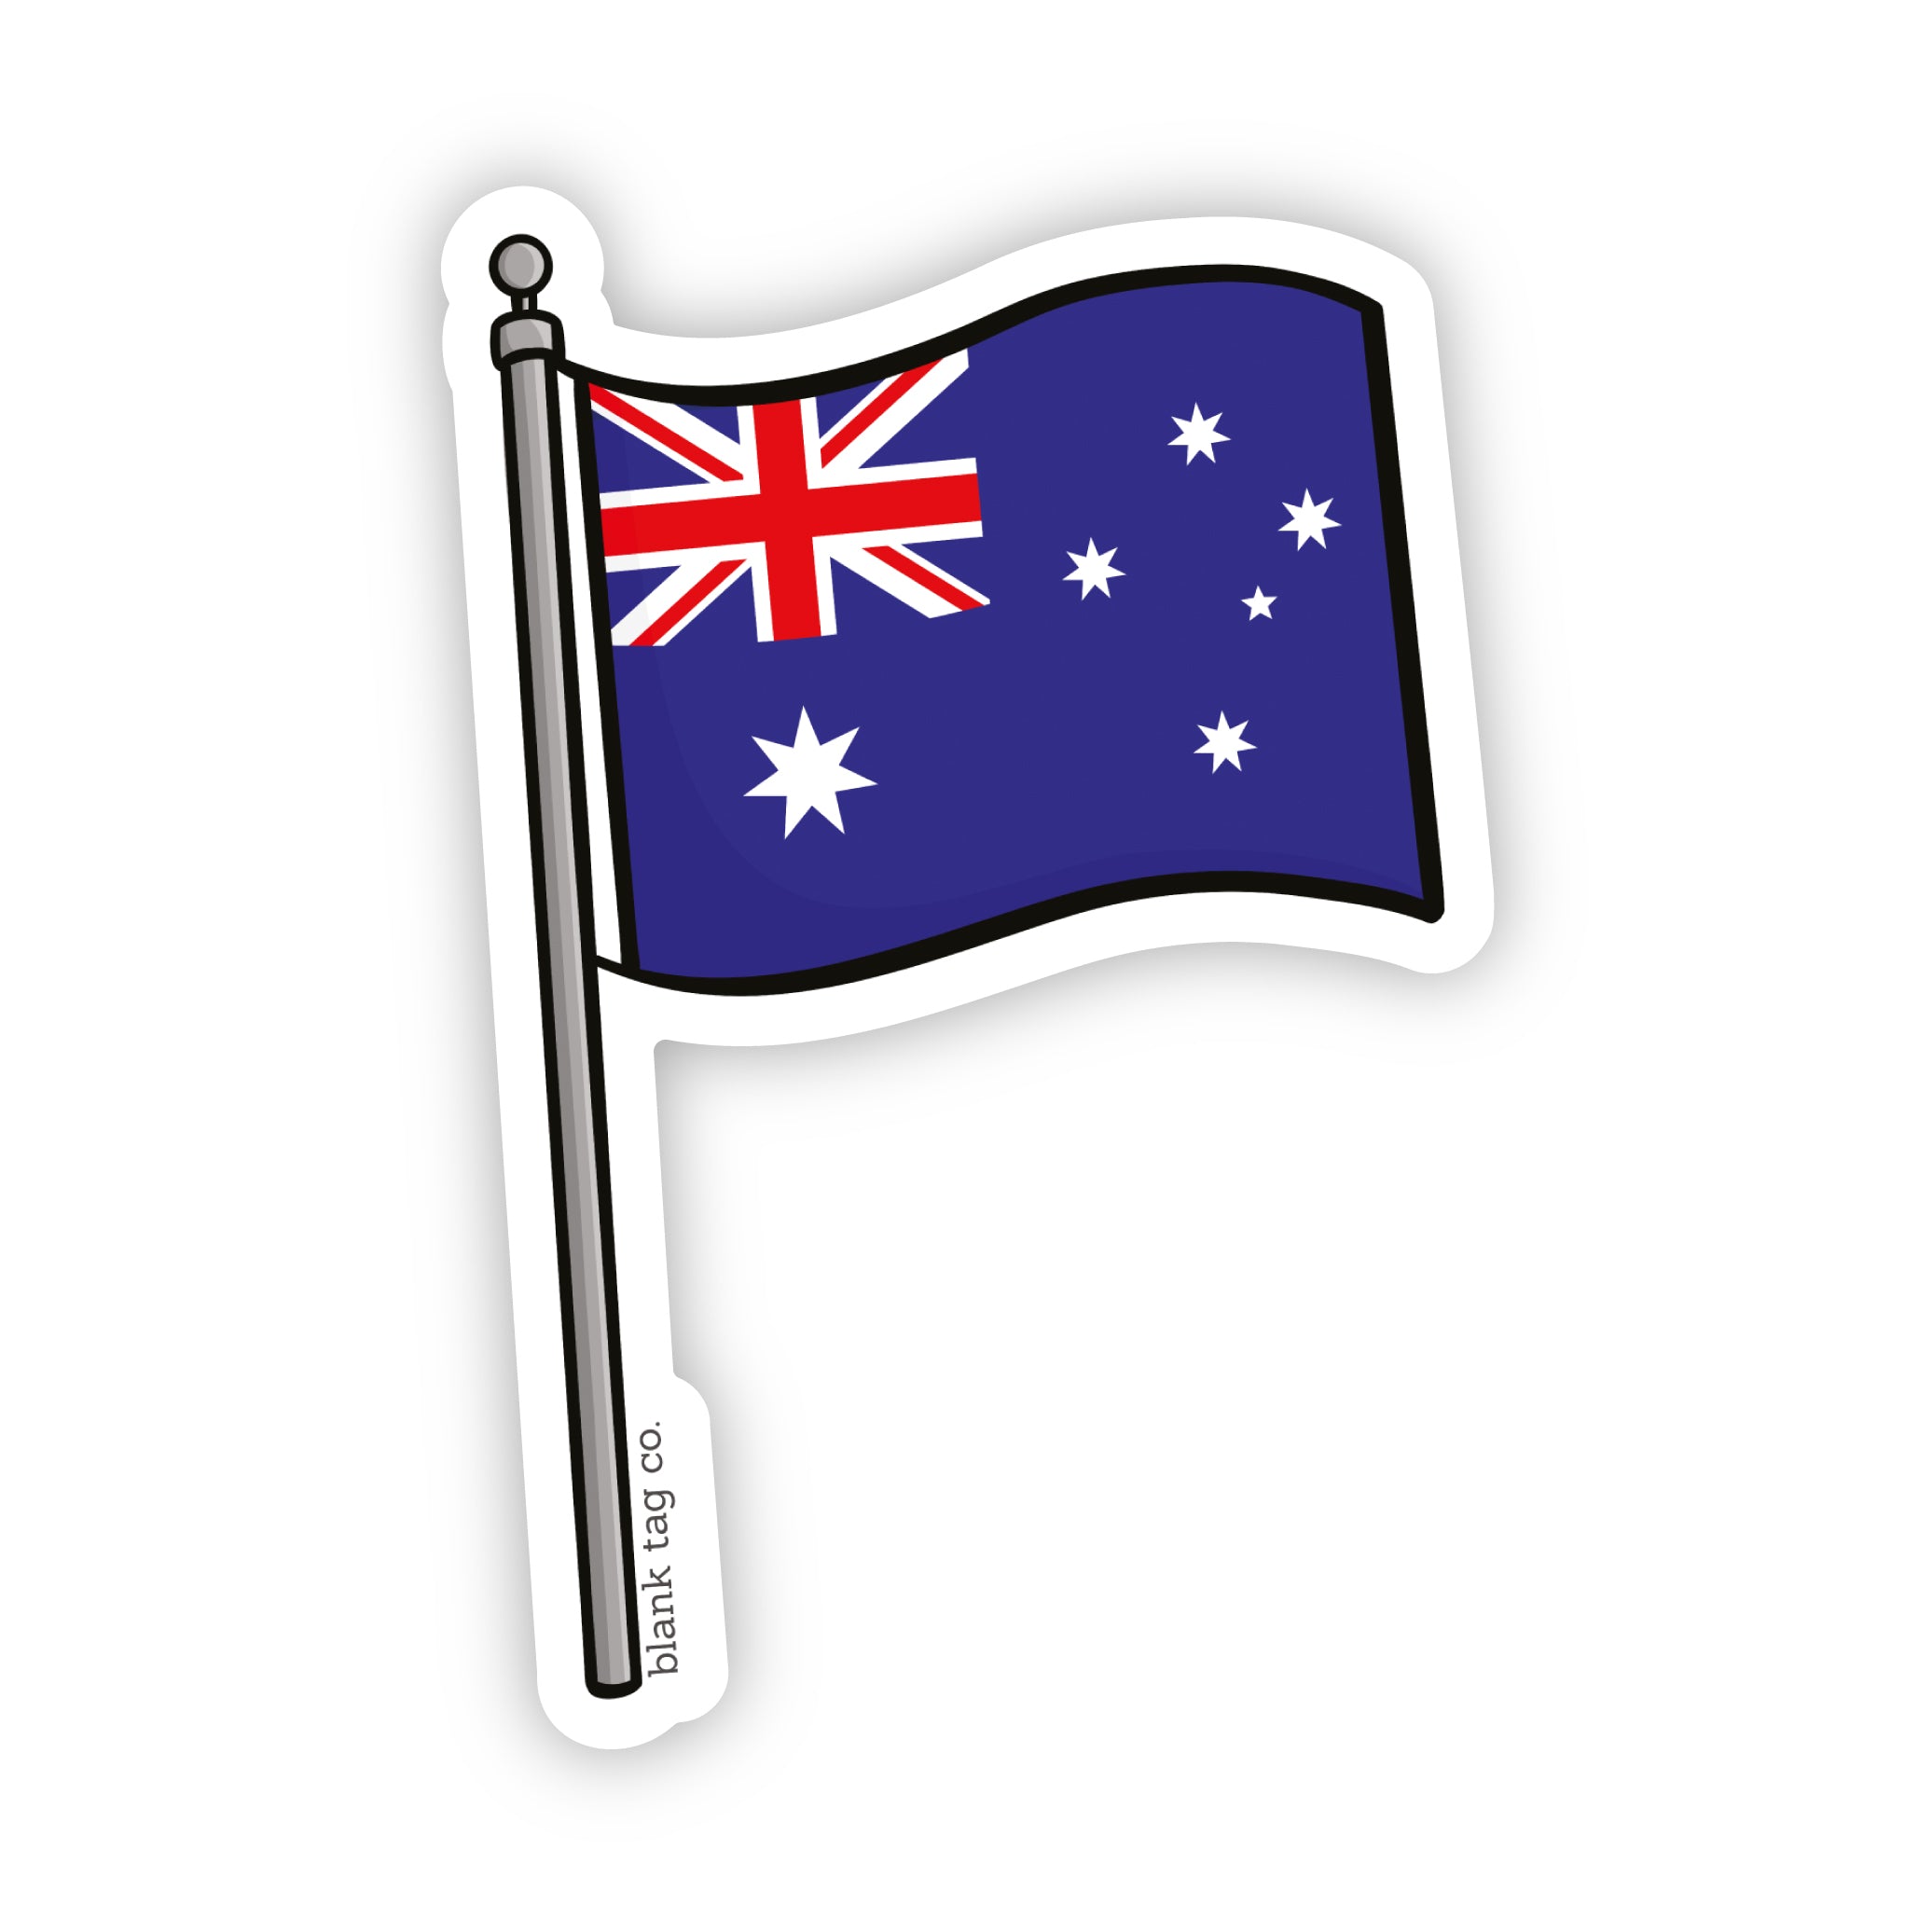 The Australia Flag Sticker